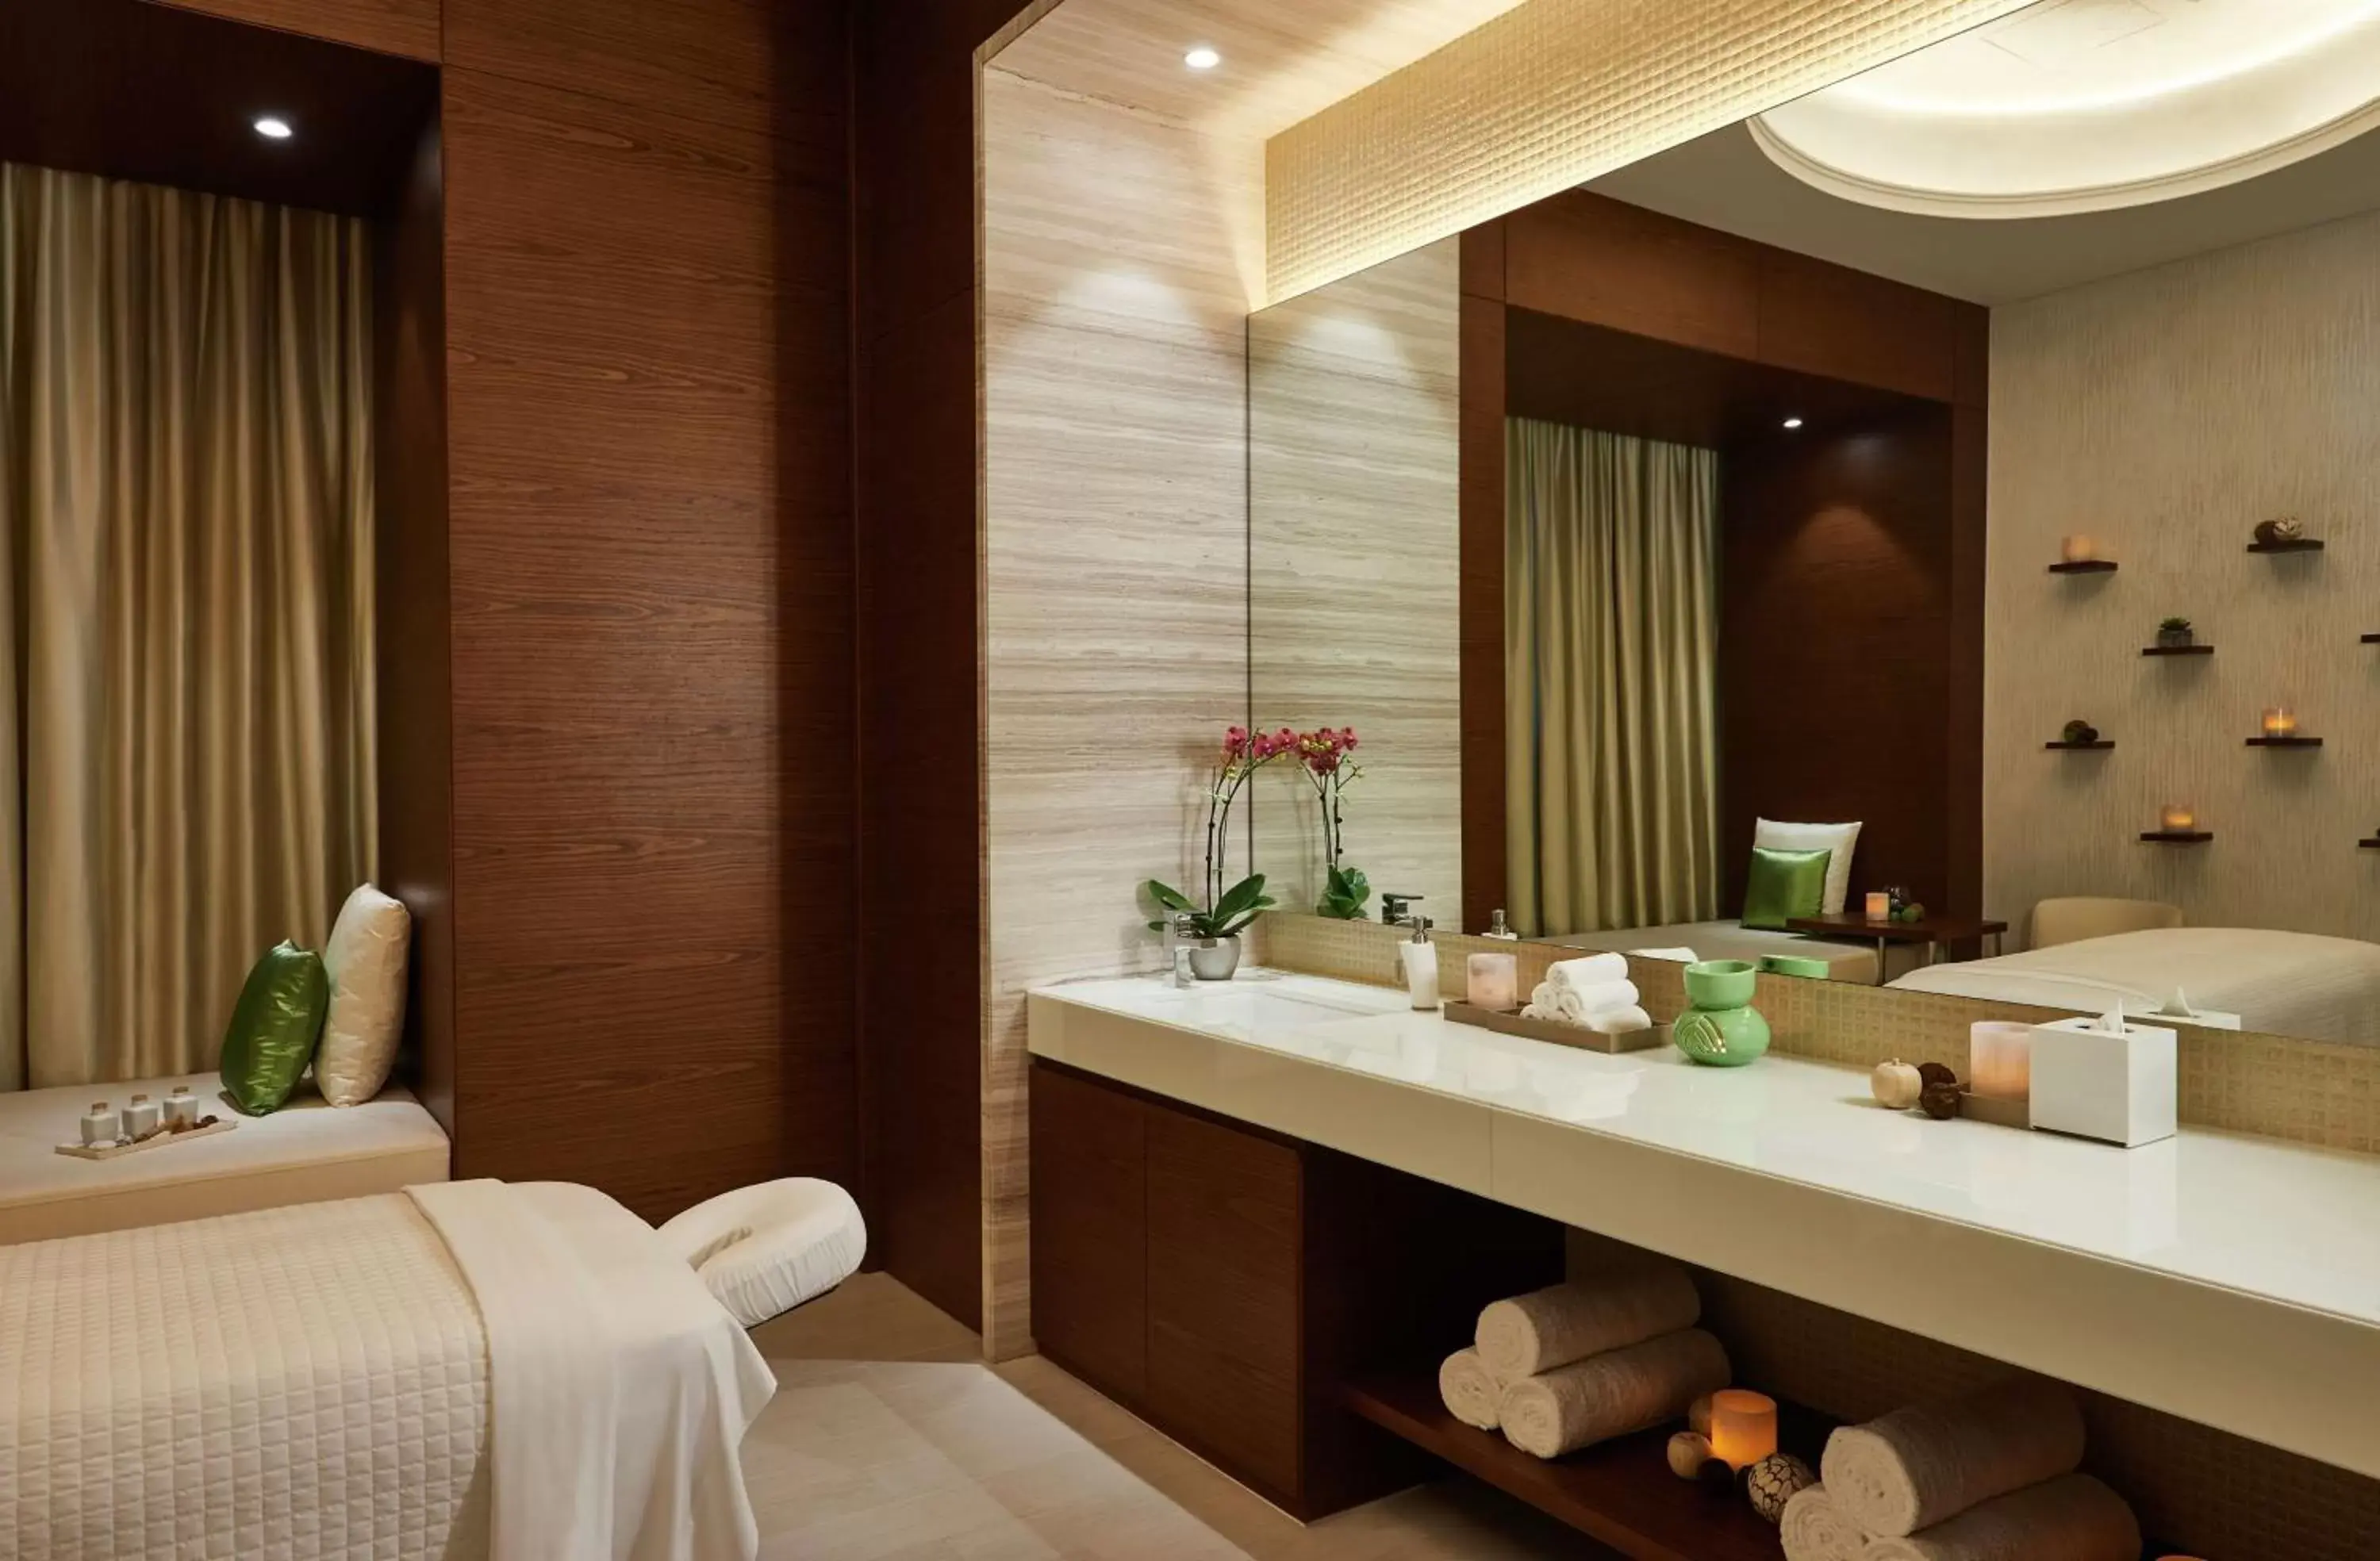 Spa and wellness centre/facilities, Bathroom in Hilton Dubai Al Habtoor City